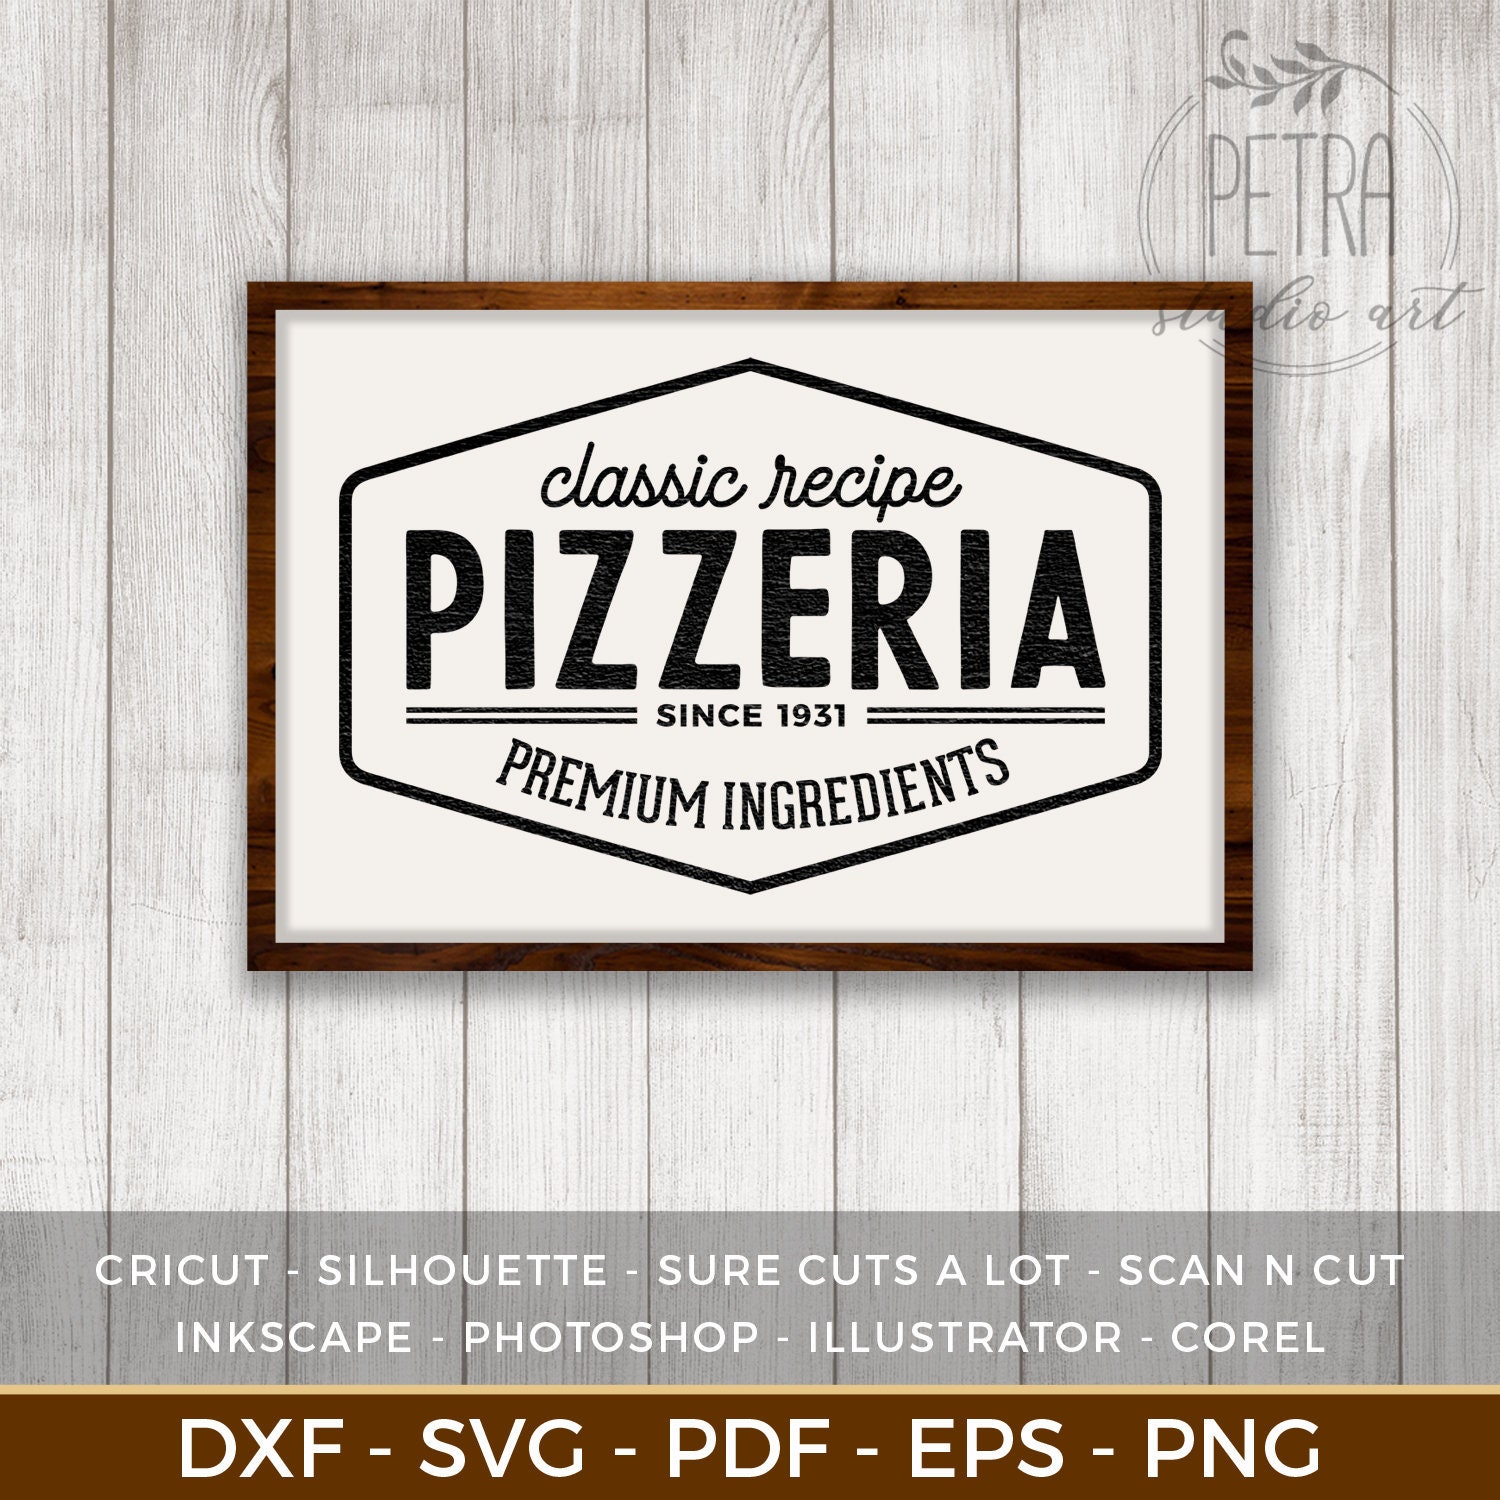 Retro Pizza Sign Stock Illustrations – 6,640 Retro Pizza Sign